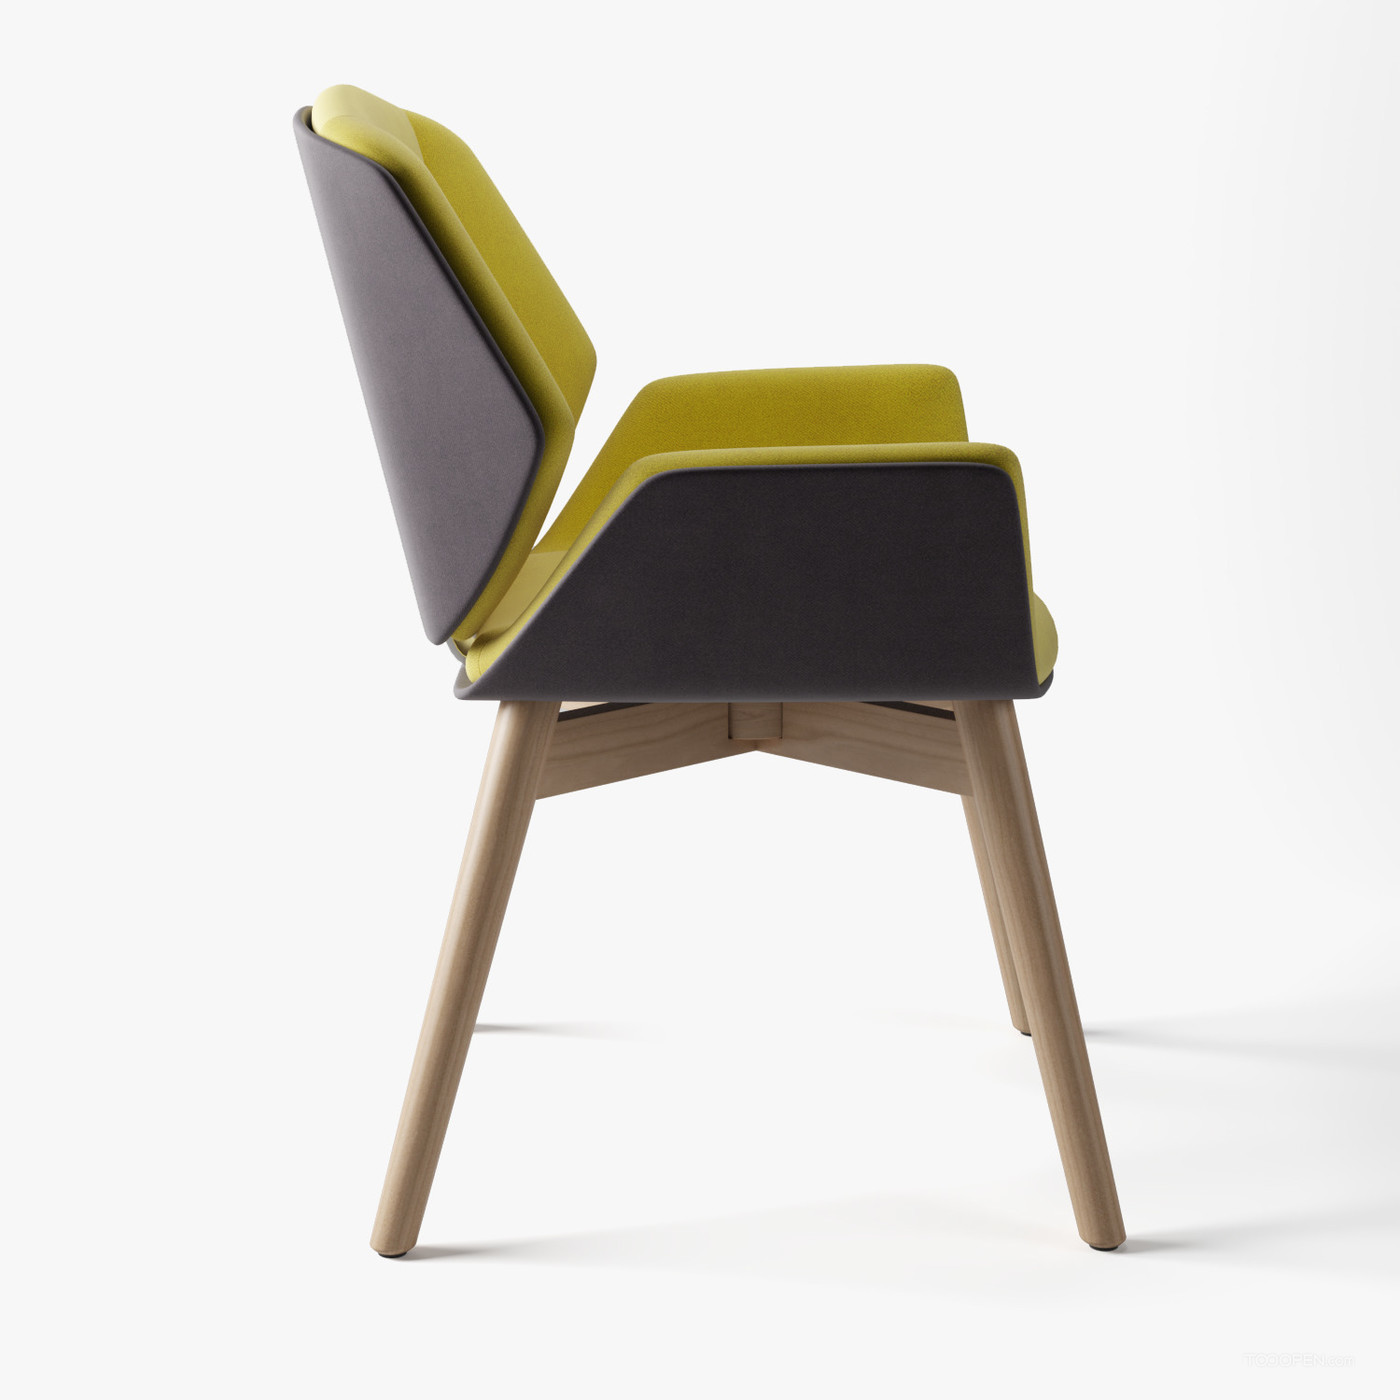 时尚简约风格的椅子家具设计欣赏-05